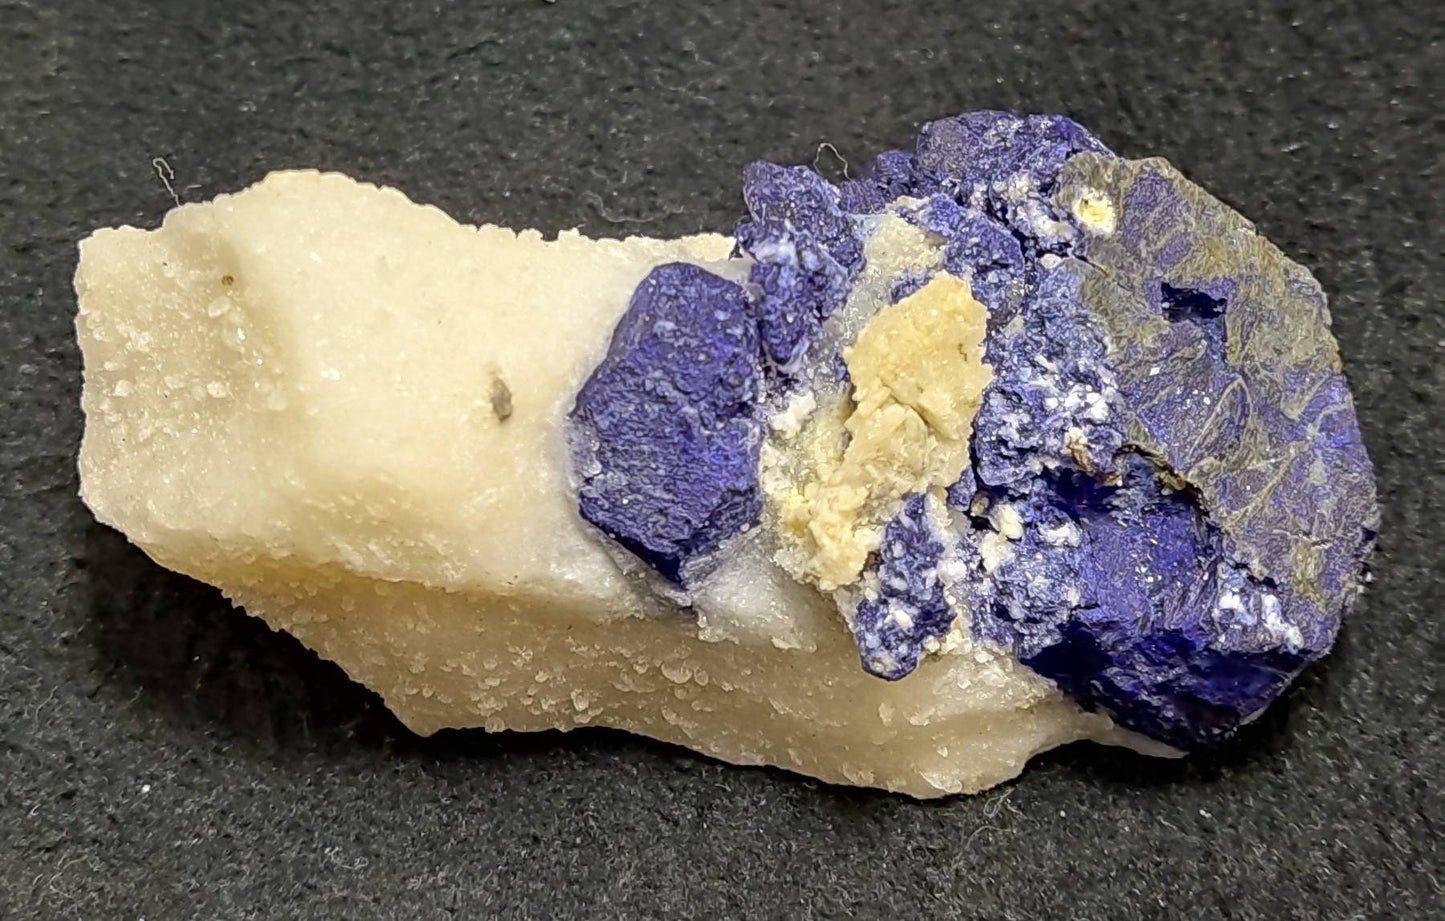 Amazing specimen of Lazurite on matrix of calcite/marble 239 grams